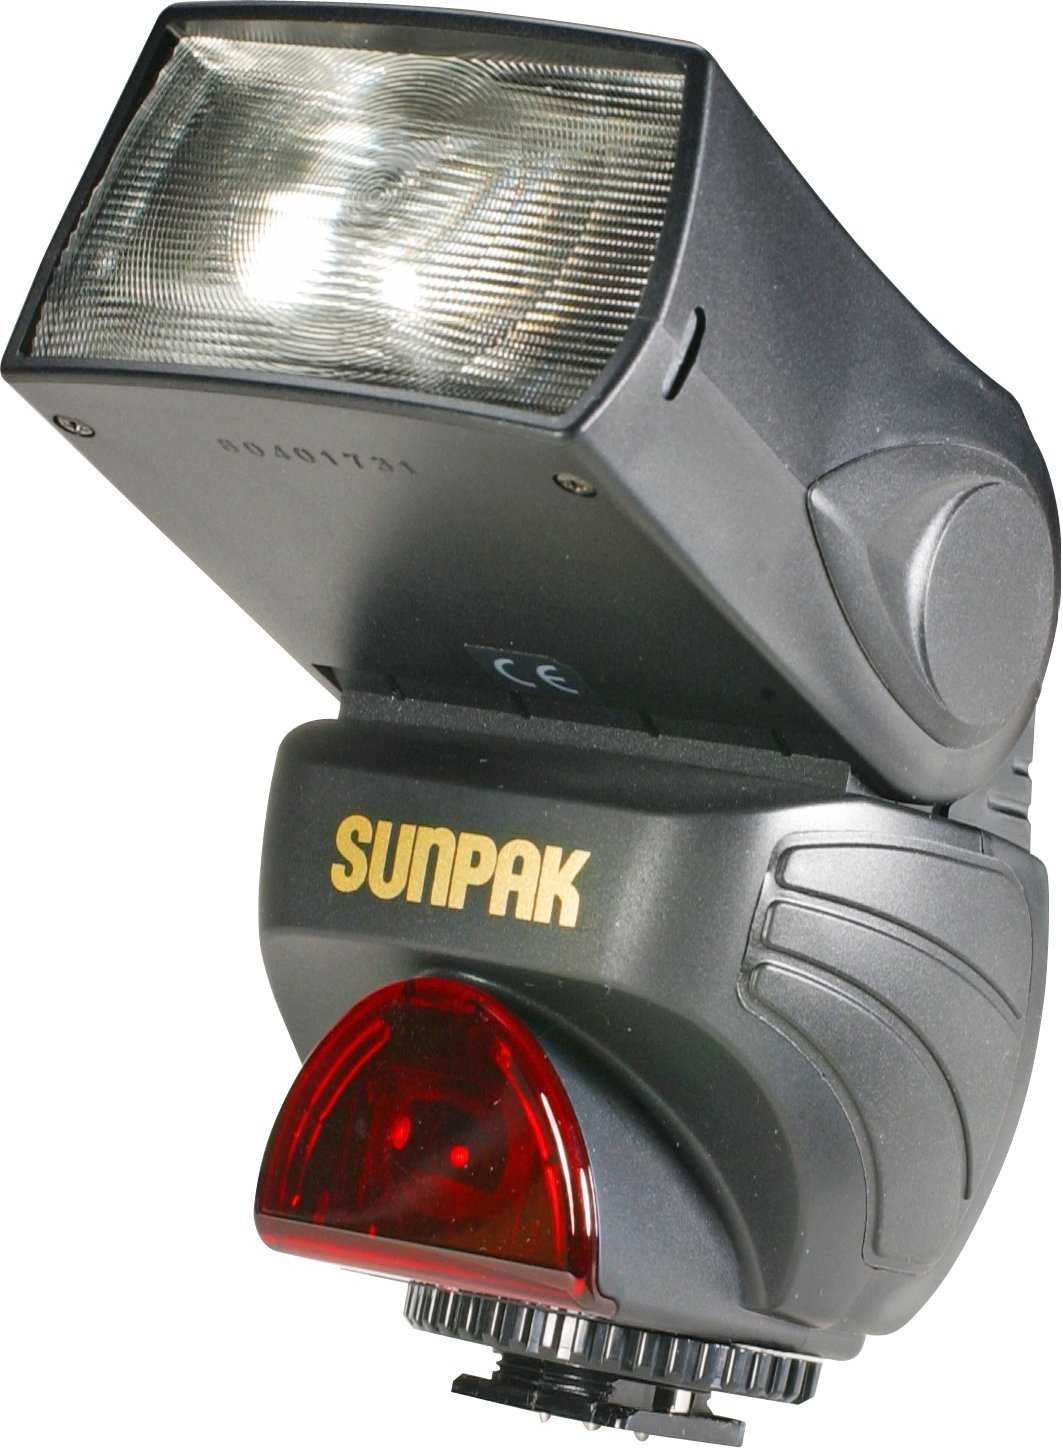 Sunpak pz42x digital flash for nikon купить по акционной цене , отзывы и обзоры.